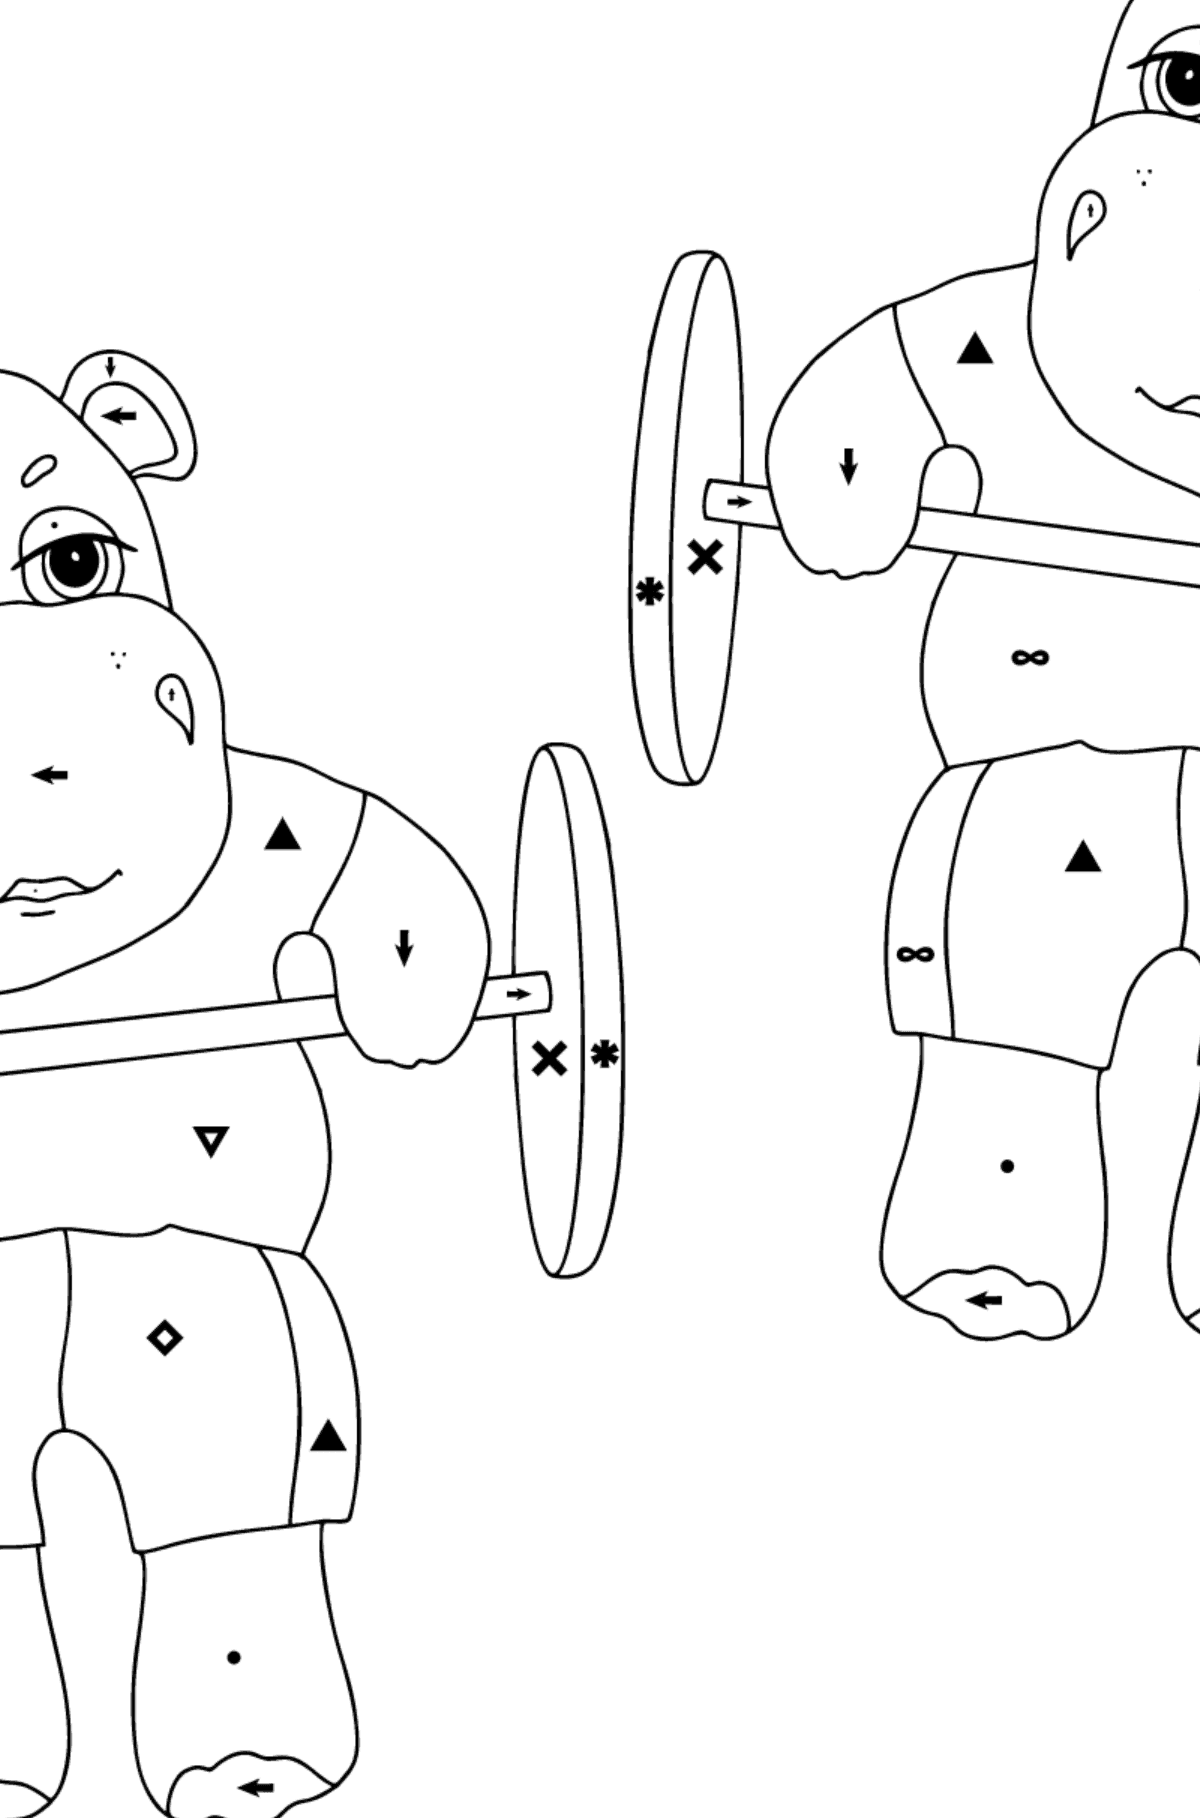 Kolorowanka Sportowy hipopotam (trudny) - Kolorowanie według symboli dla dzieci